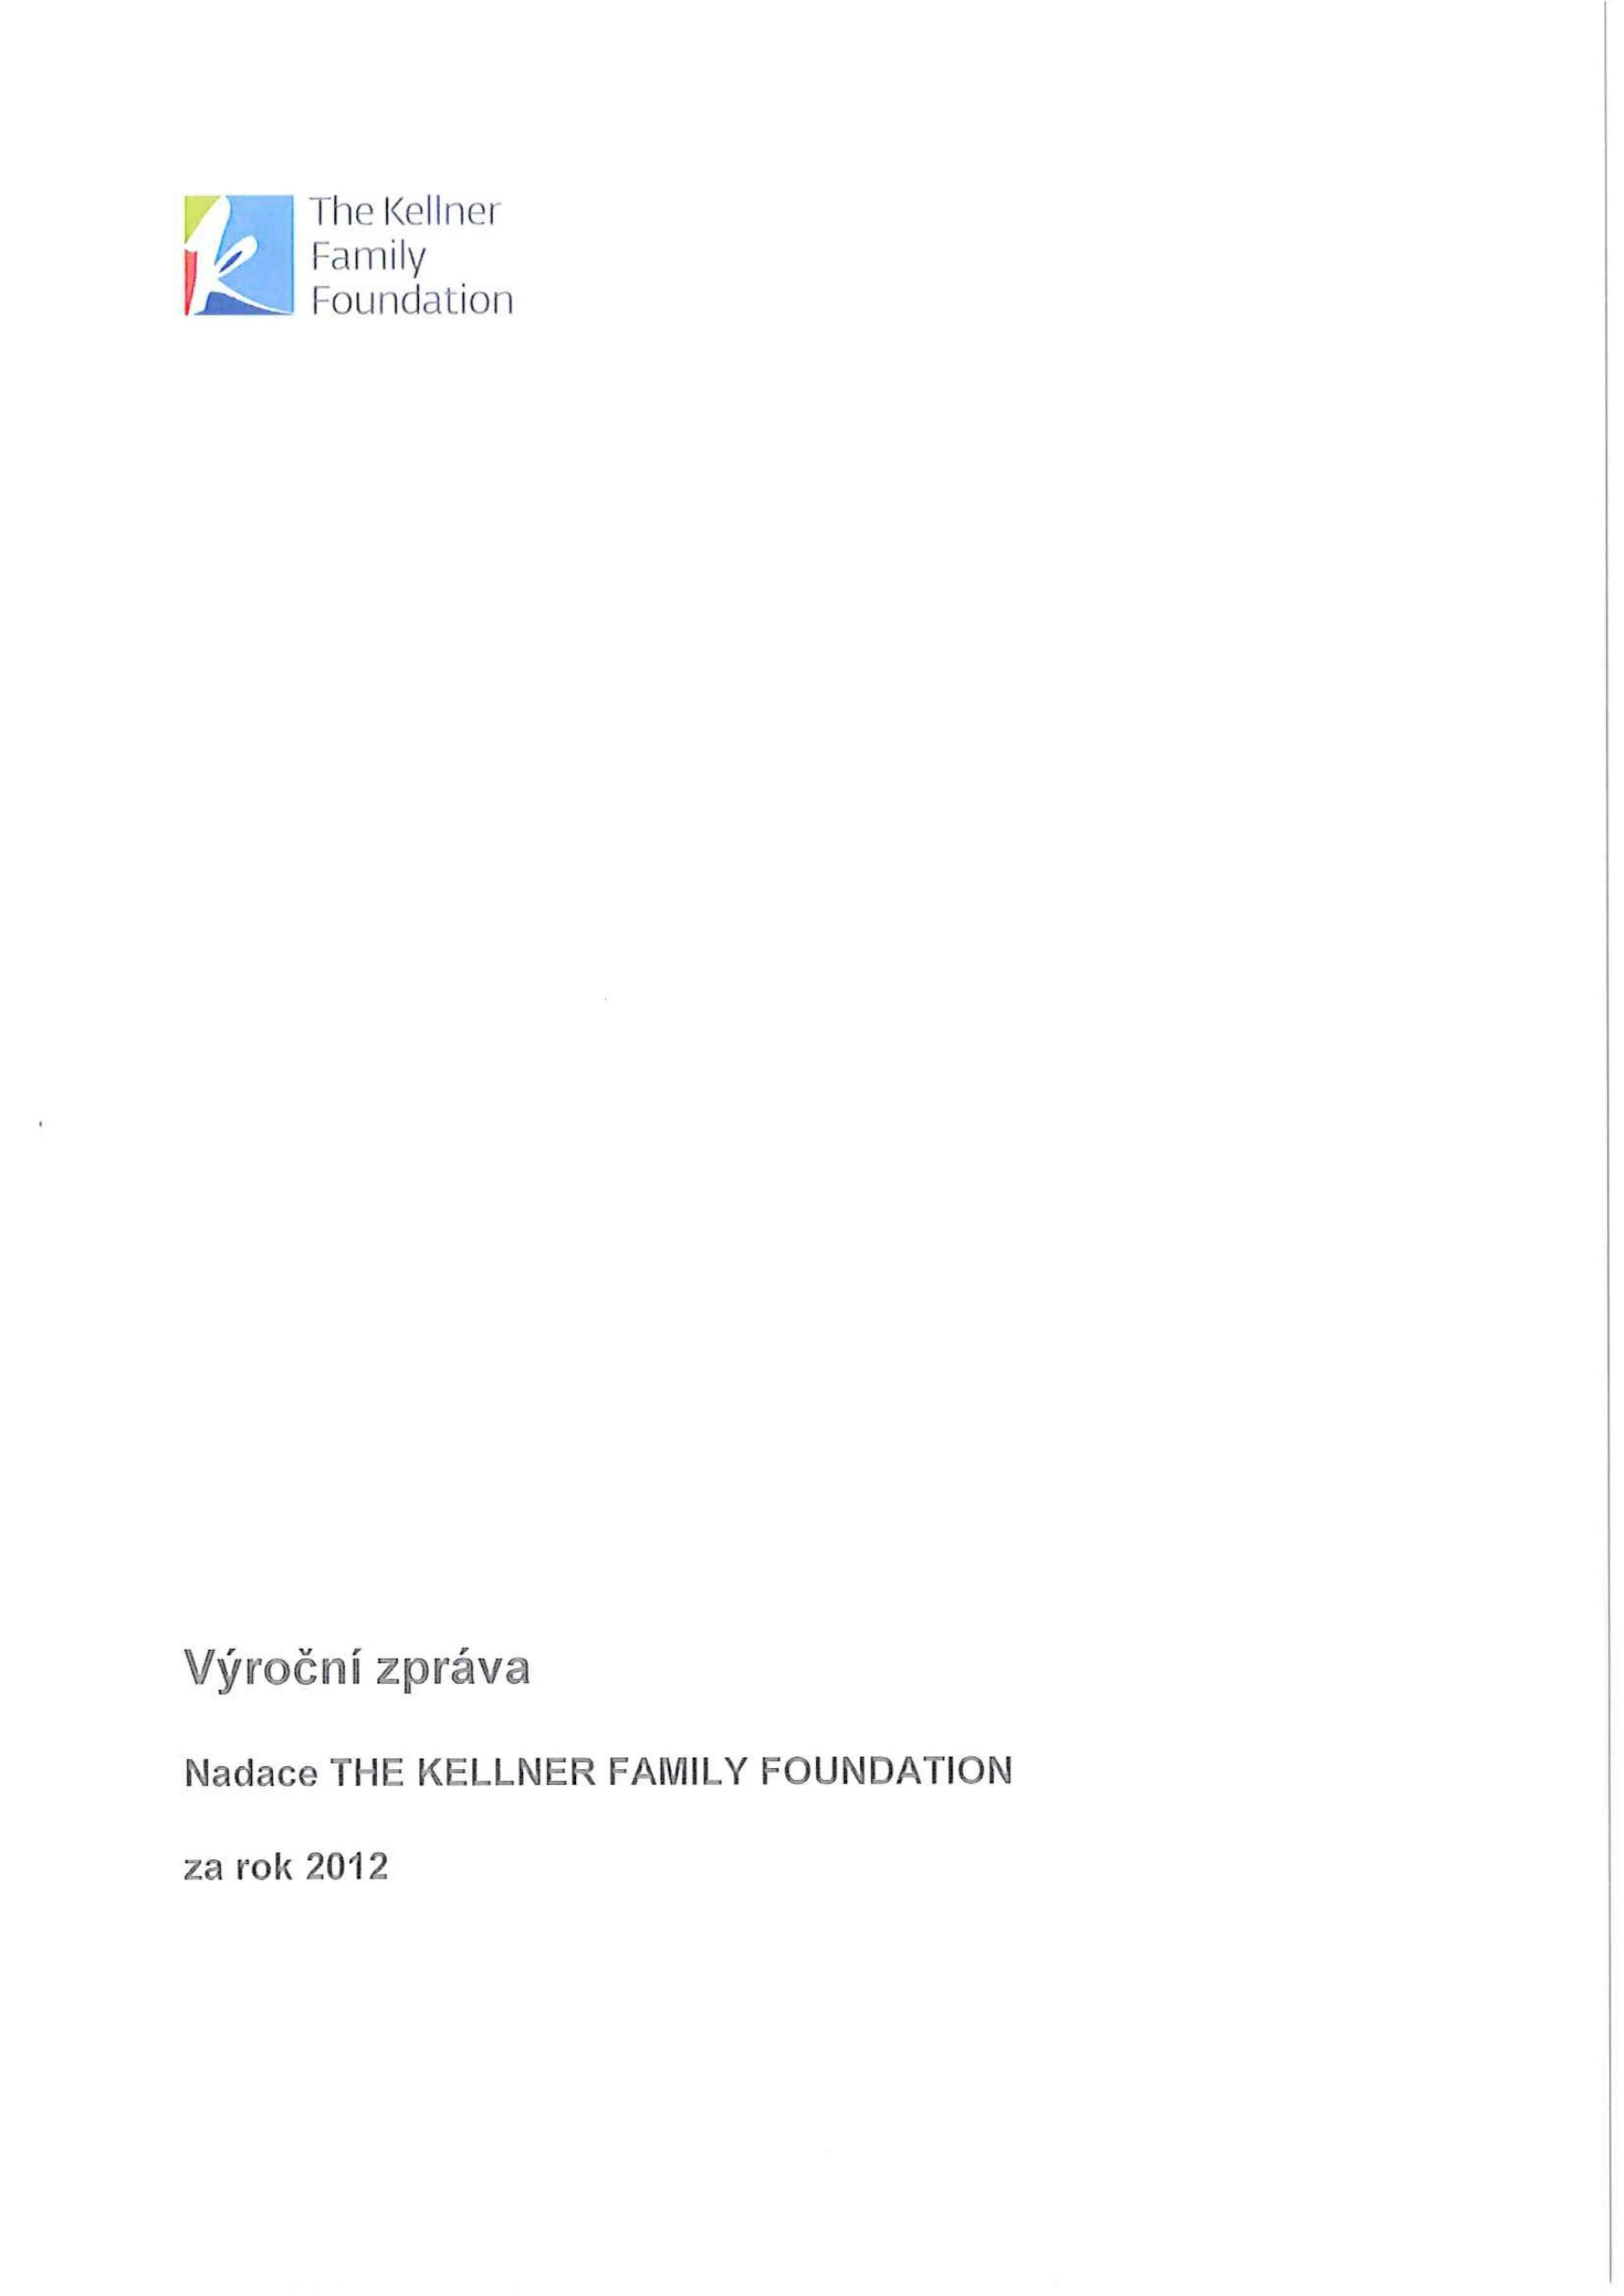 tkff-vz-2012.pdf